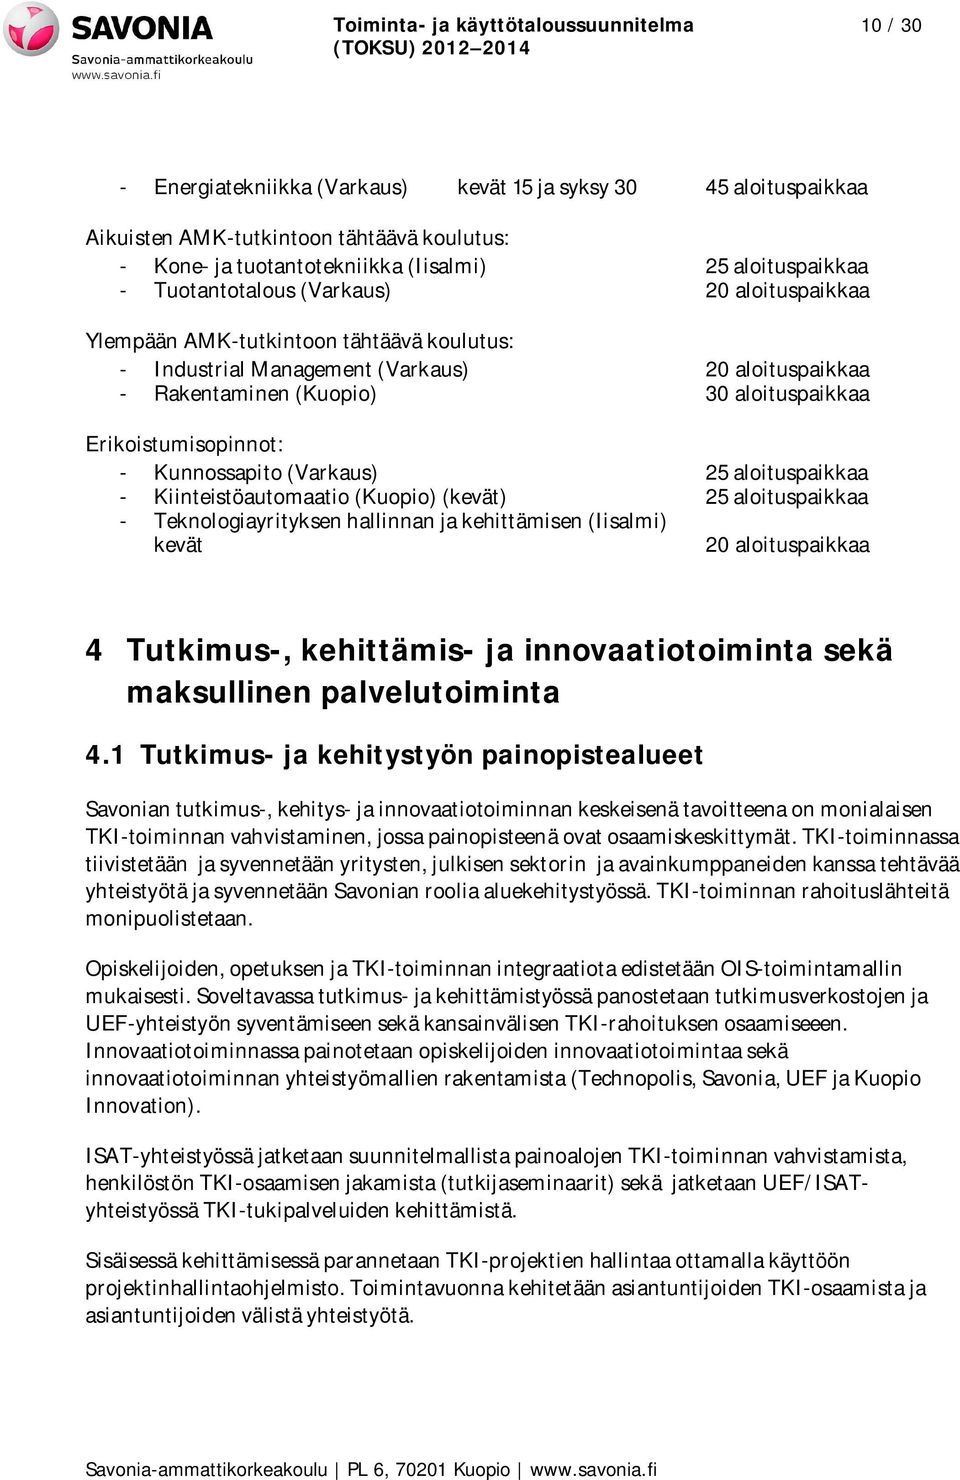 Erikoistumisopinnot: - Kunnossapito (Varkaus) 25 aloituspaikkaa - Kiinteistöautomaatio (Kuopio) (kevät) 25 aloituspaikkaa - Teknologiayrityksen hallinnan ja kehittämisen (Iisalmi) kevät 20